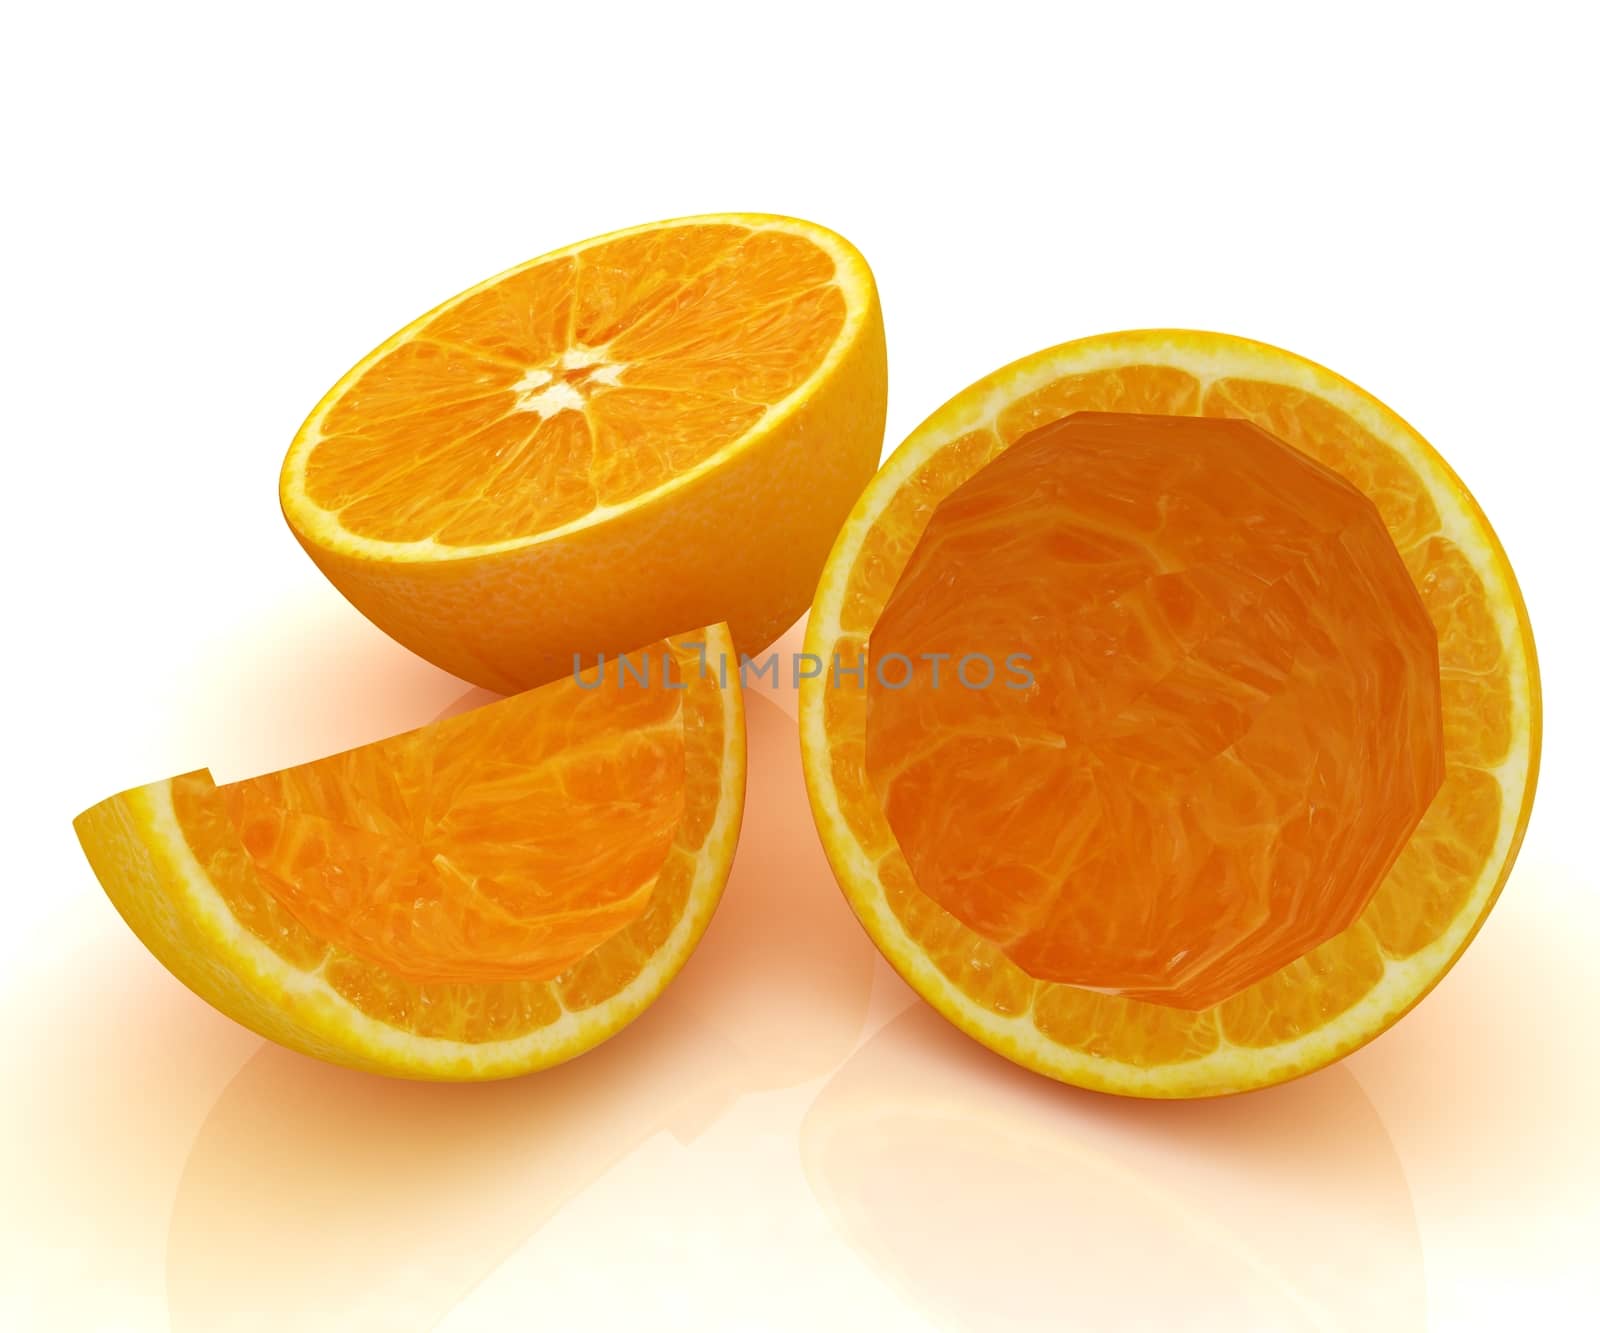 orange fruit on white background